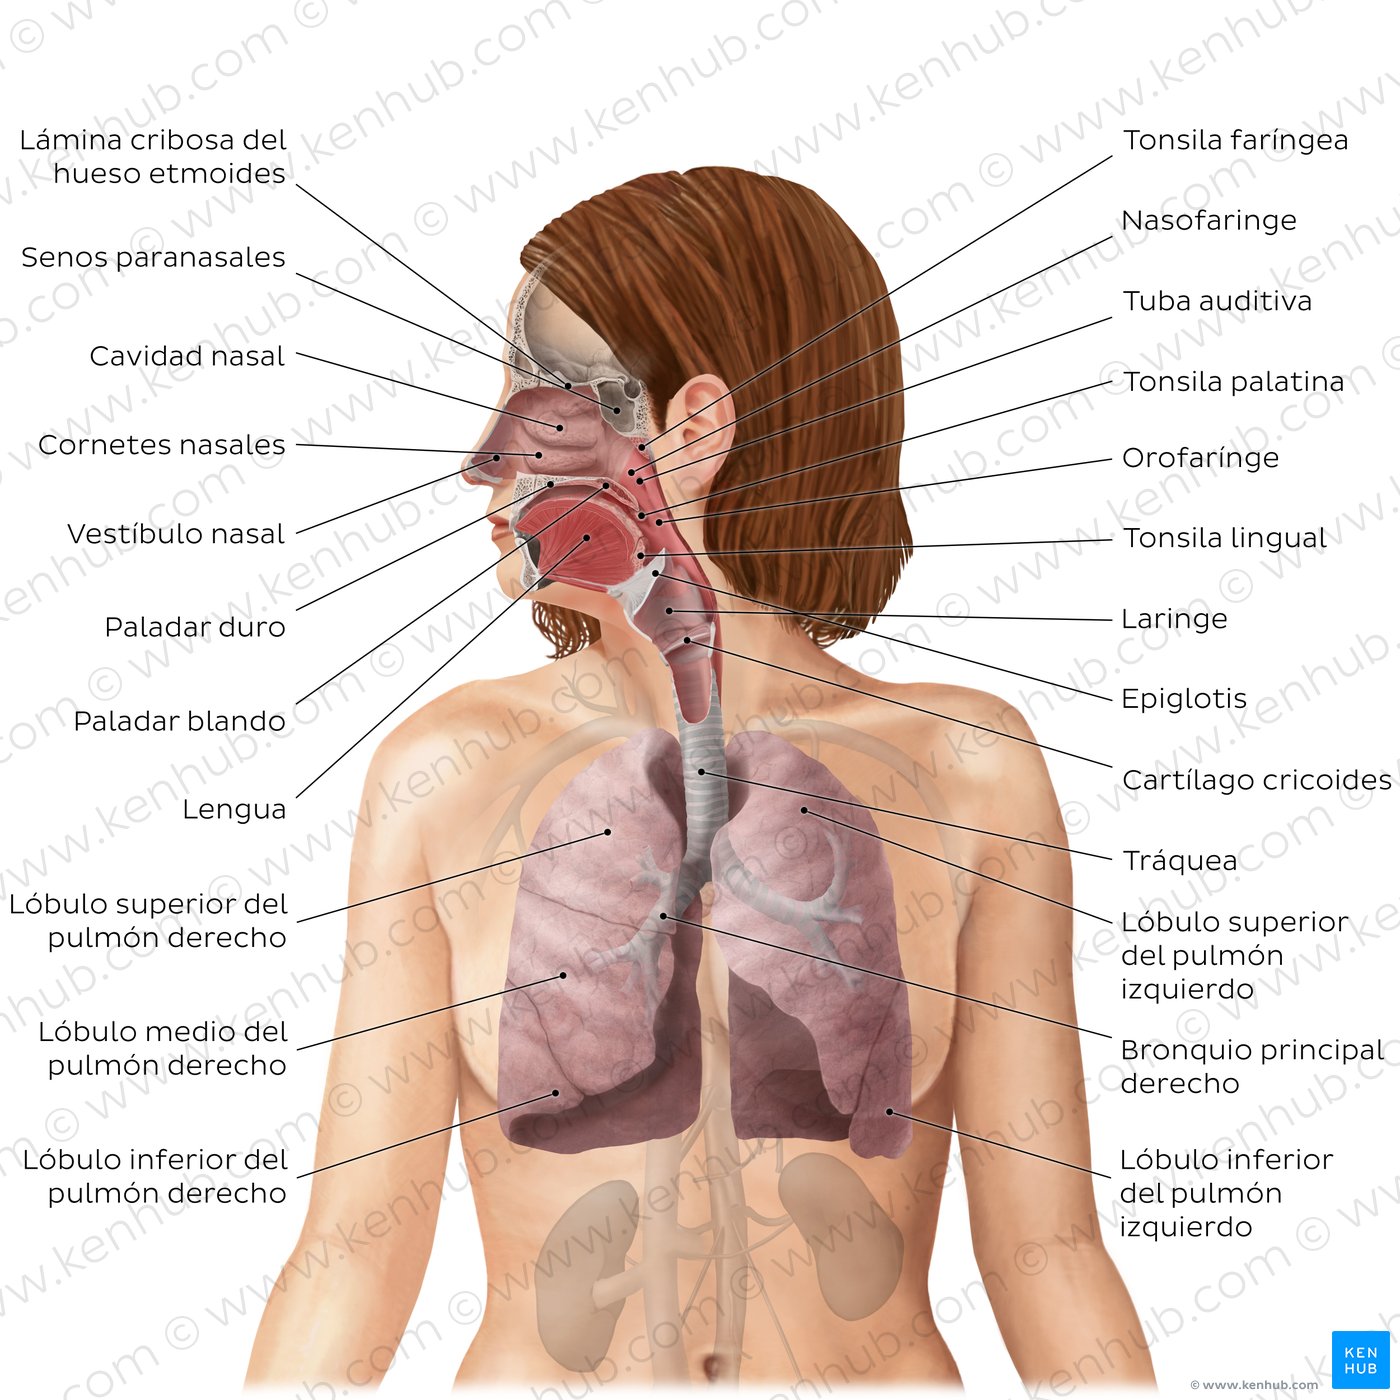 Sistema respiratorio (diagrama)